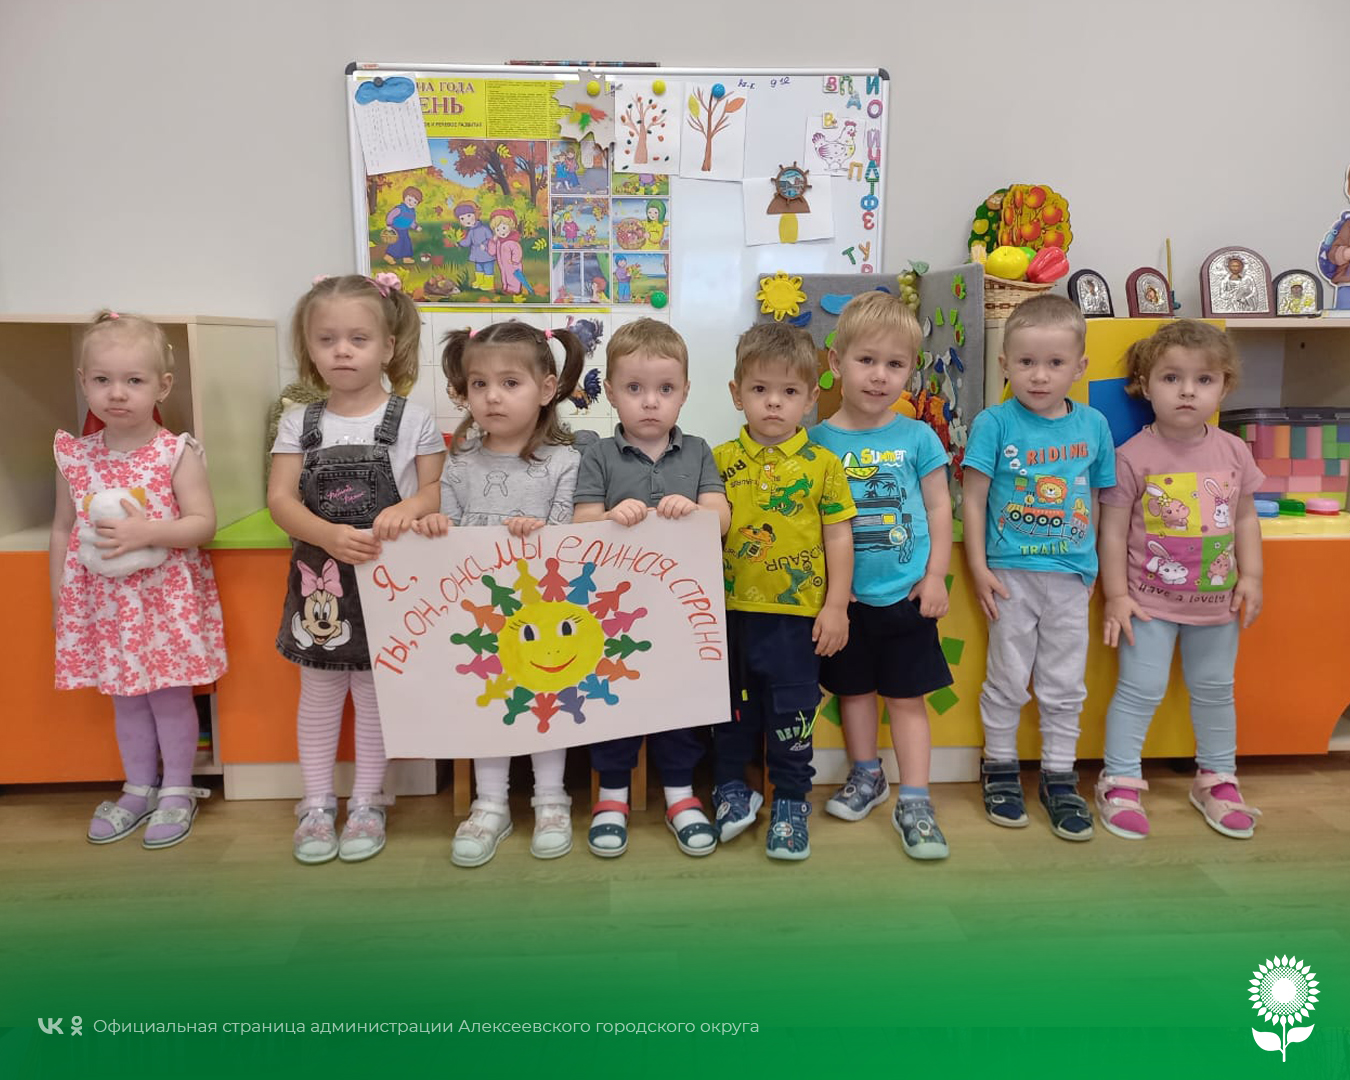 В детских садах Алексеевского городского округа прошли мероприятия с целью знакомства детей с Днем народного единства.